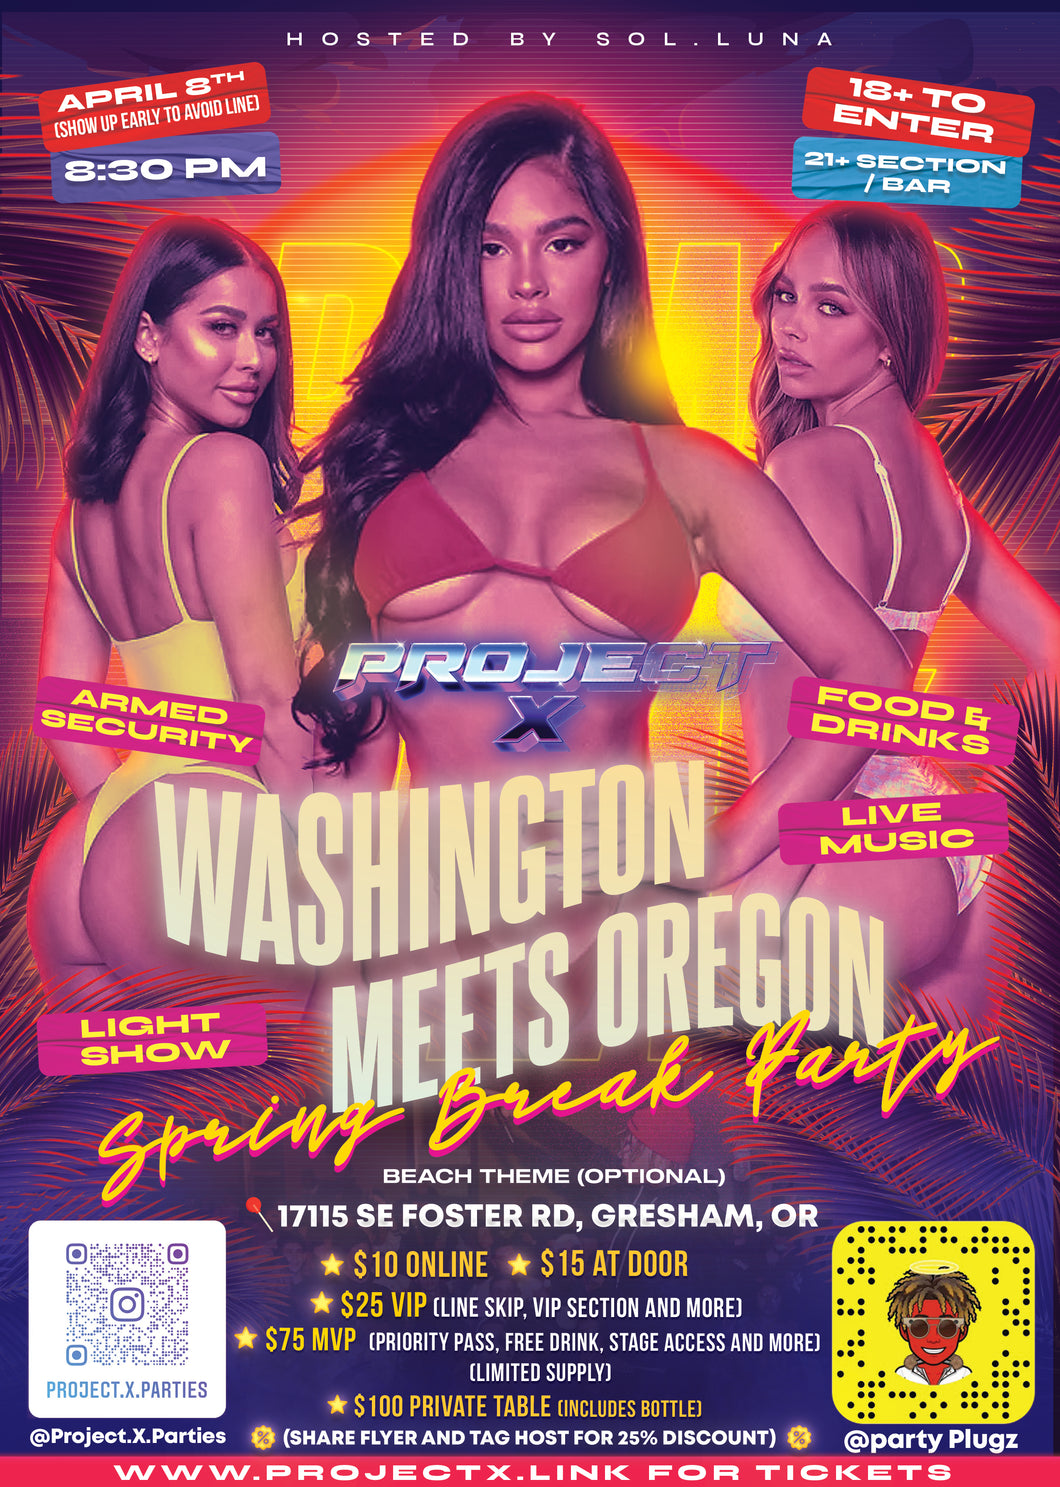 Washington Meets Oregon VIP